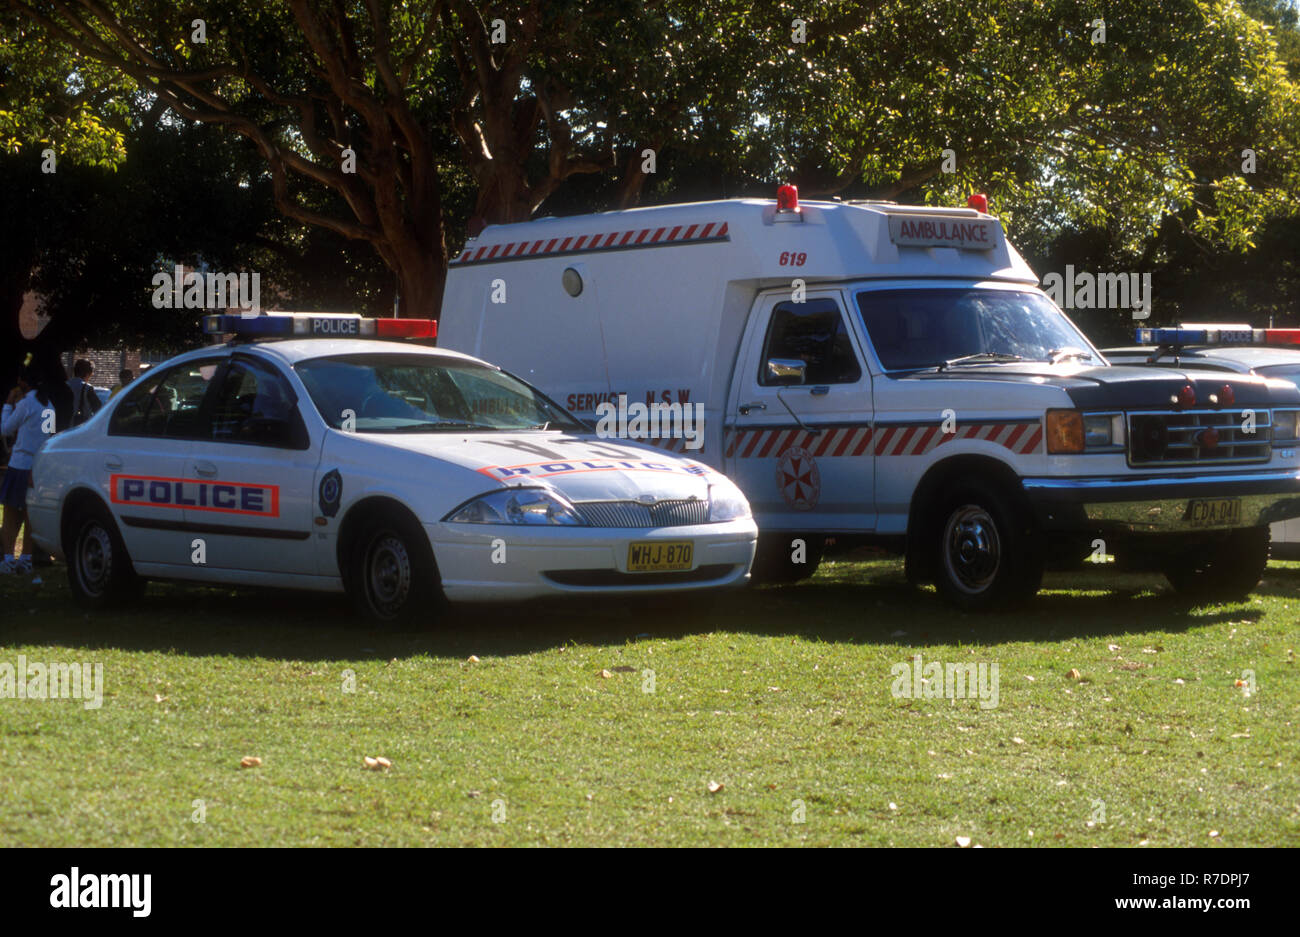 Estacionar vehículos de servicios de emergencia, New South Wales ambulancia aparcado junto a un coche de policía en la zona de ocio al aire libre, AUSTRALIA Foto de stock